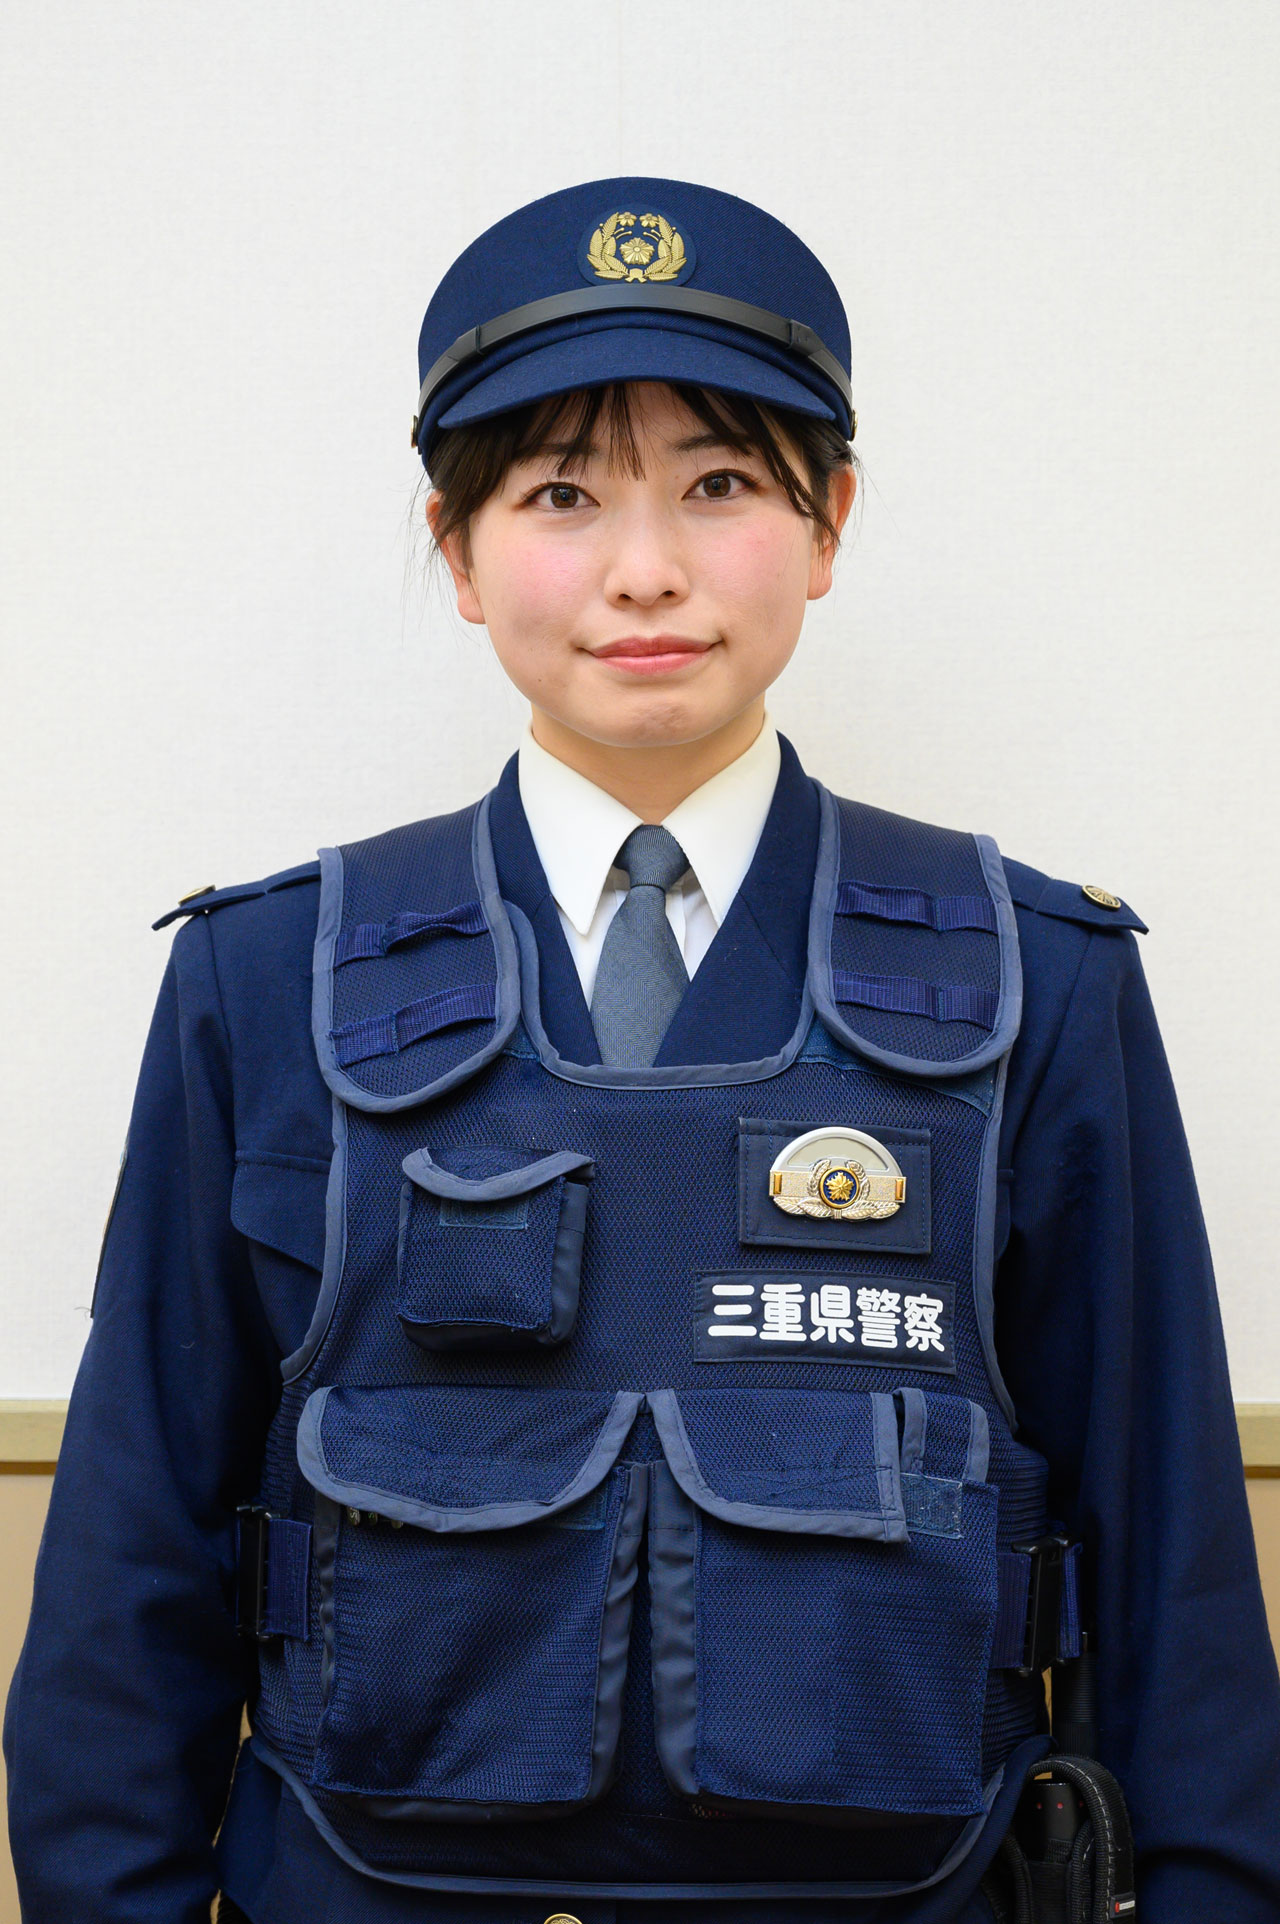 先輩の声 地域警察 三重県警察 採用情報 Mie Police Recruiting Web Site